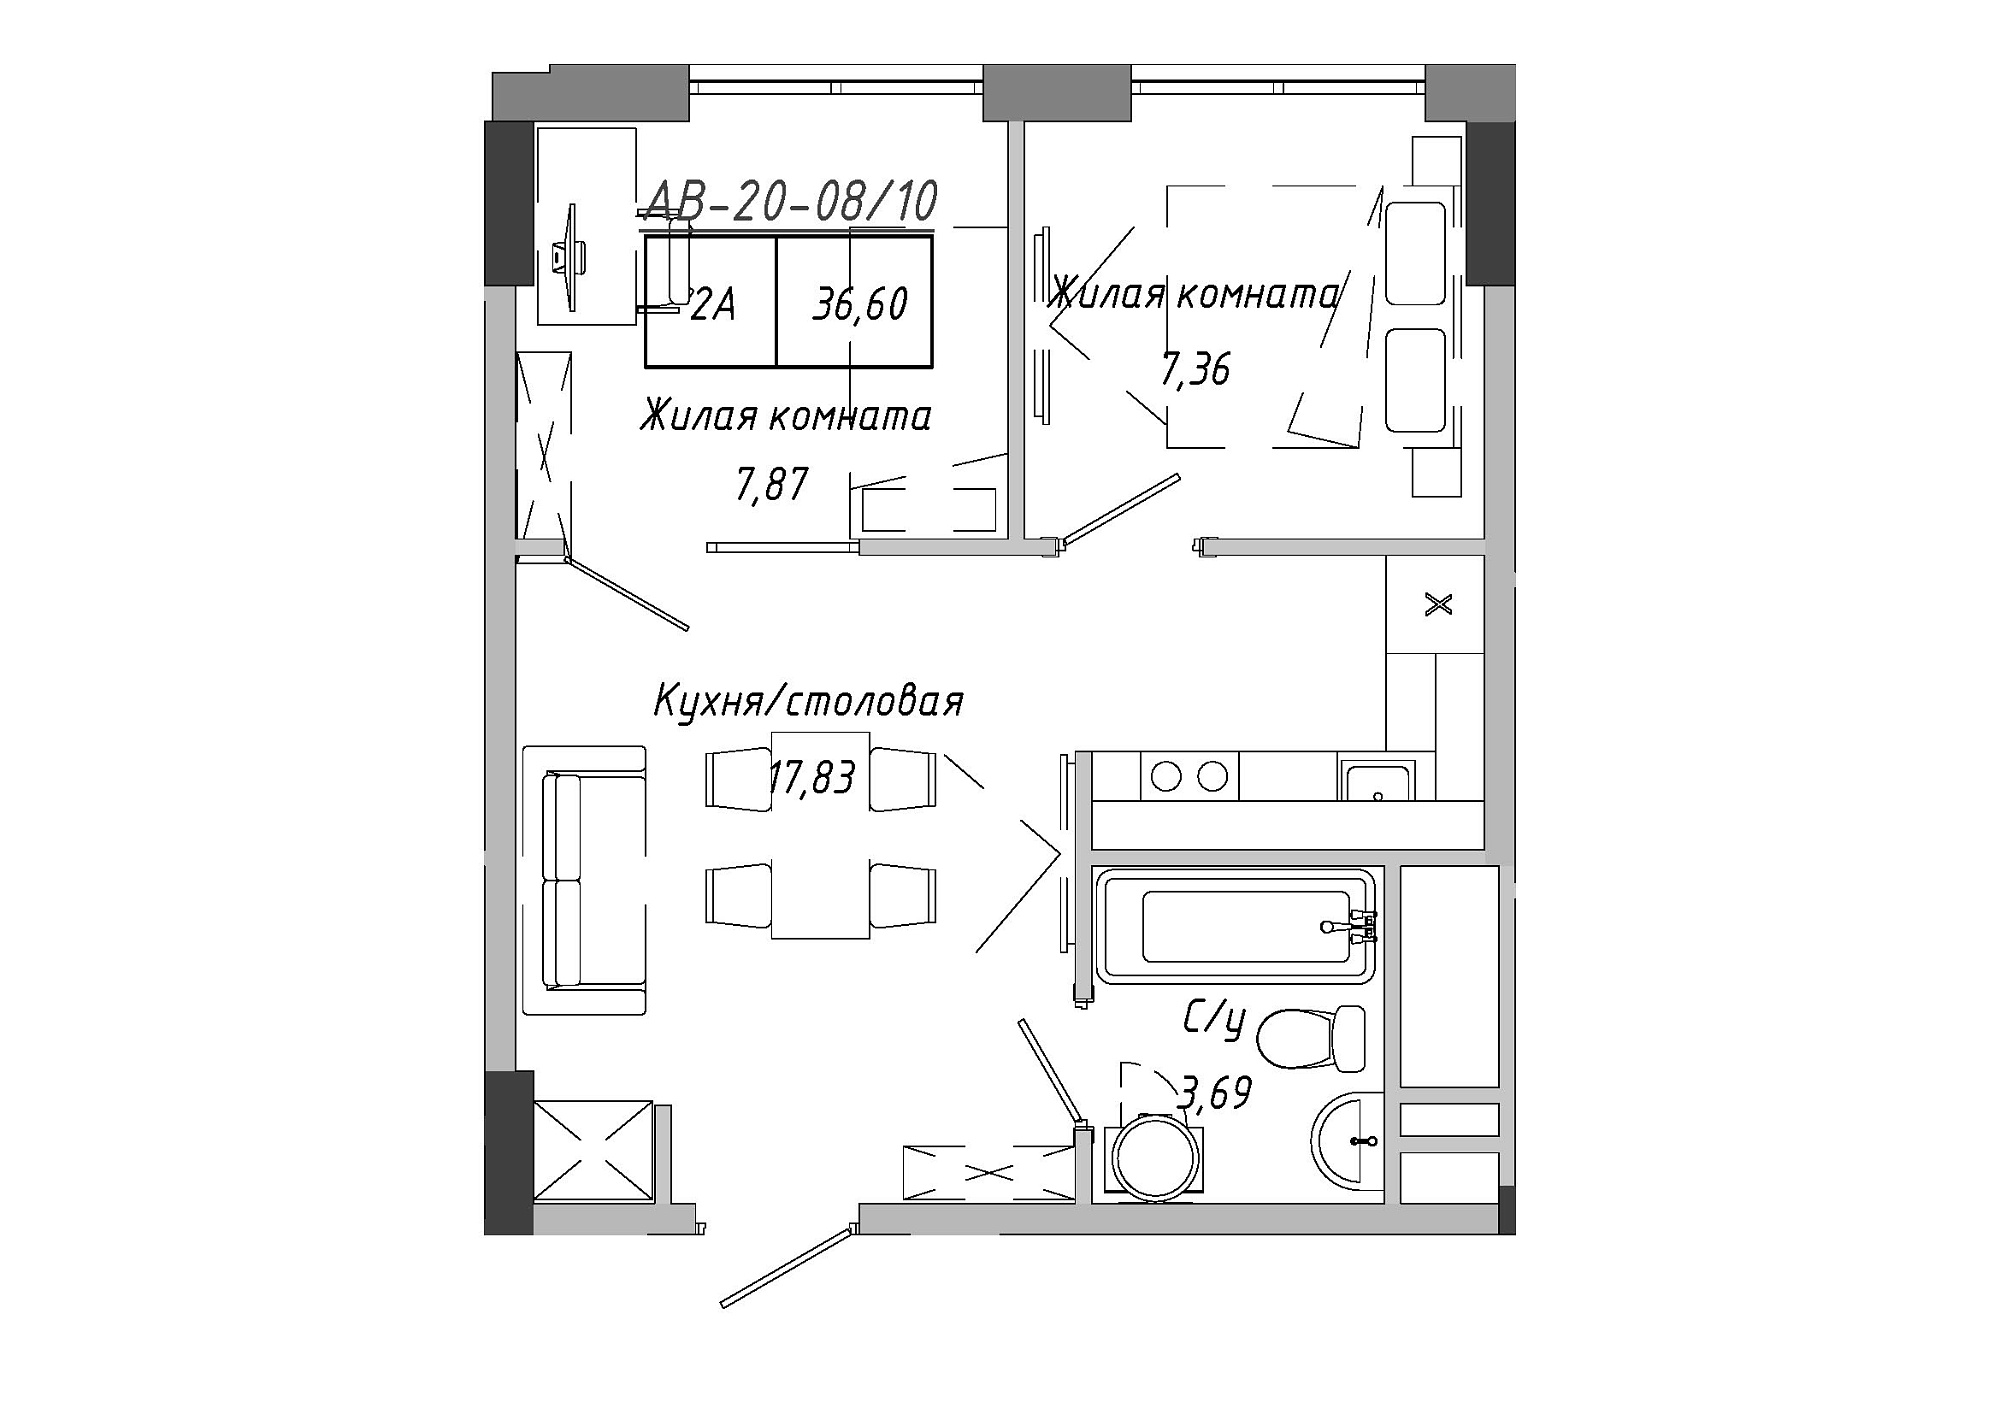 Планировка 2-к квартира площей 37.15м2, AB-20-08/00010.